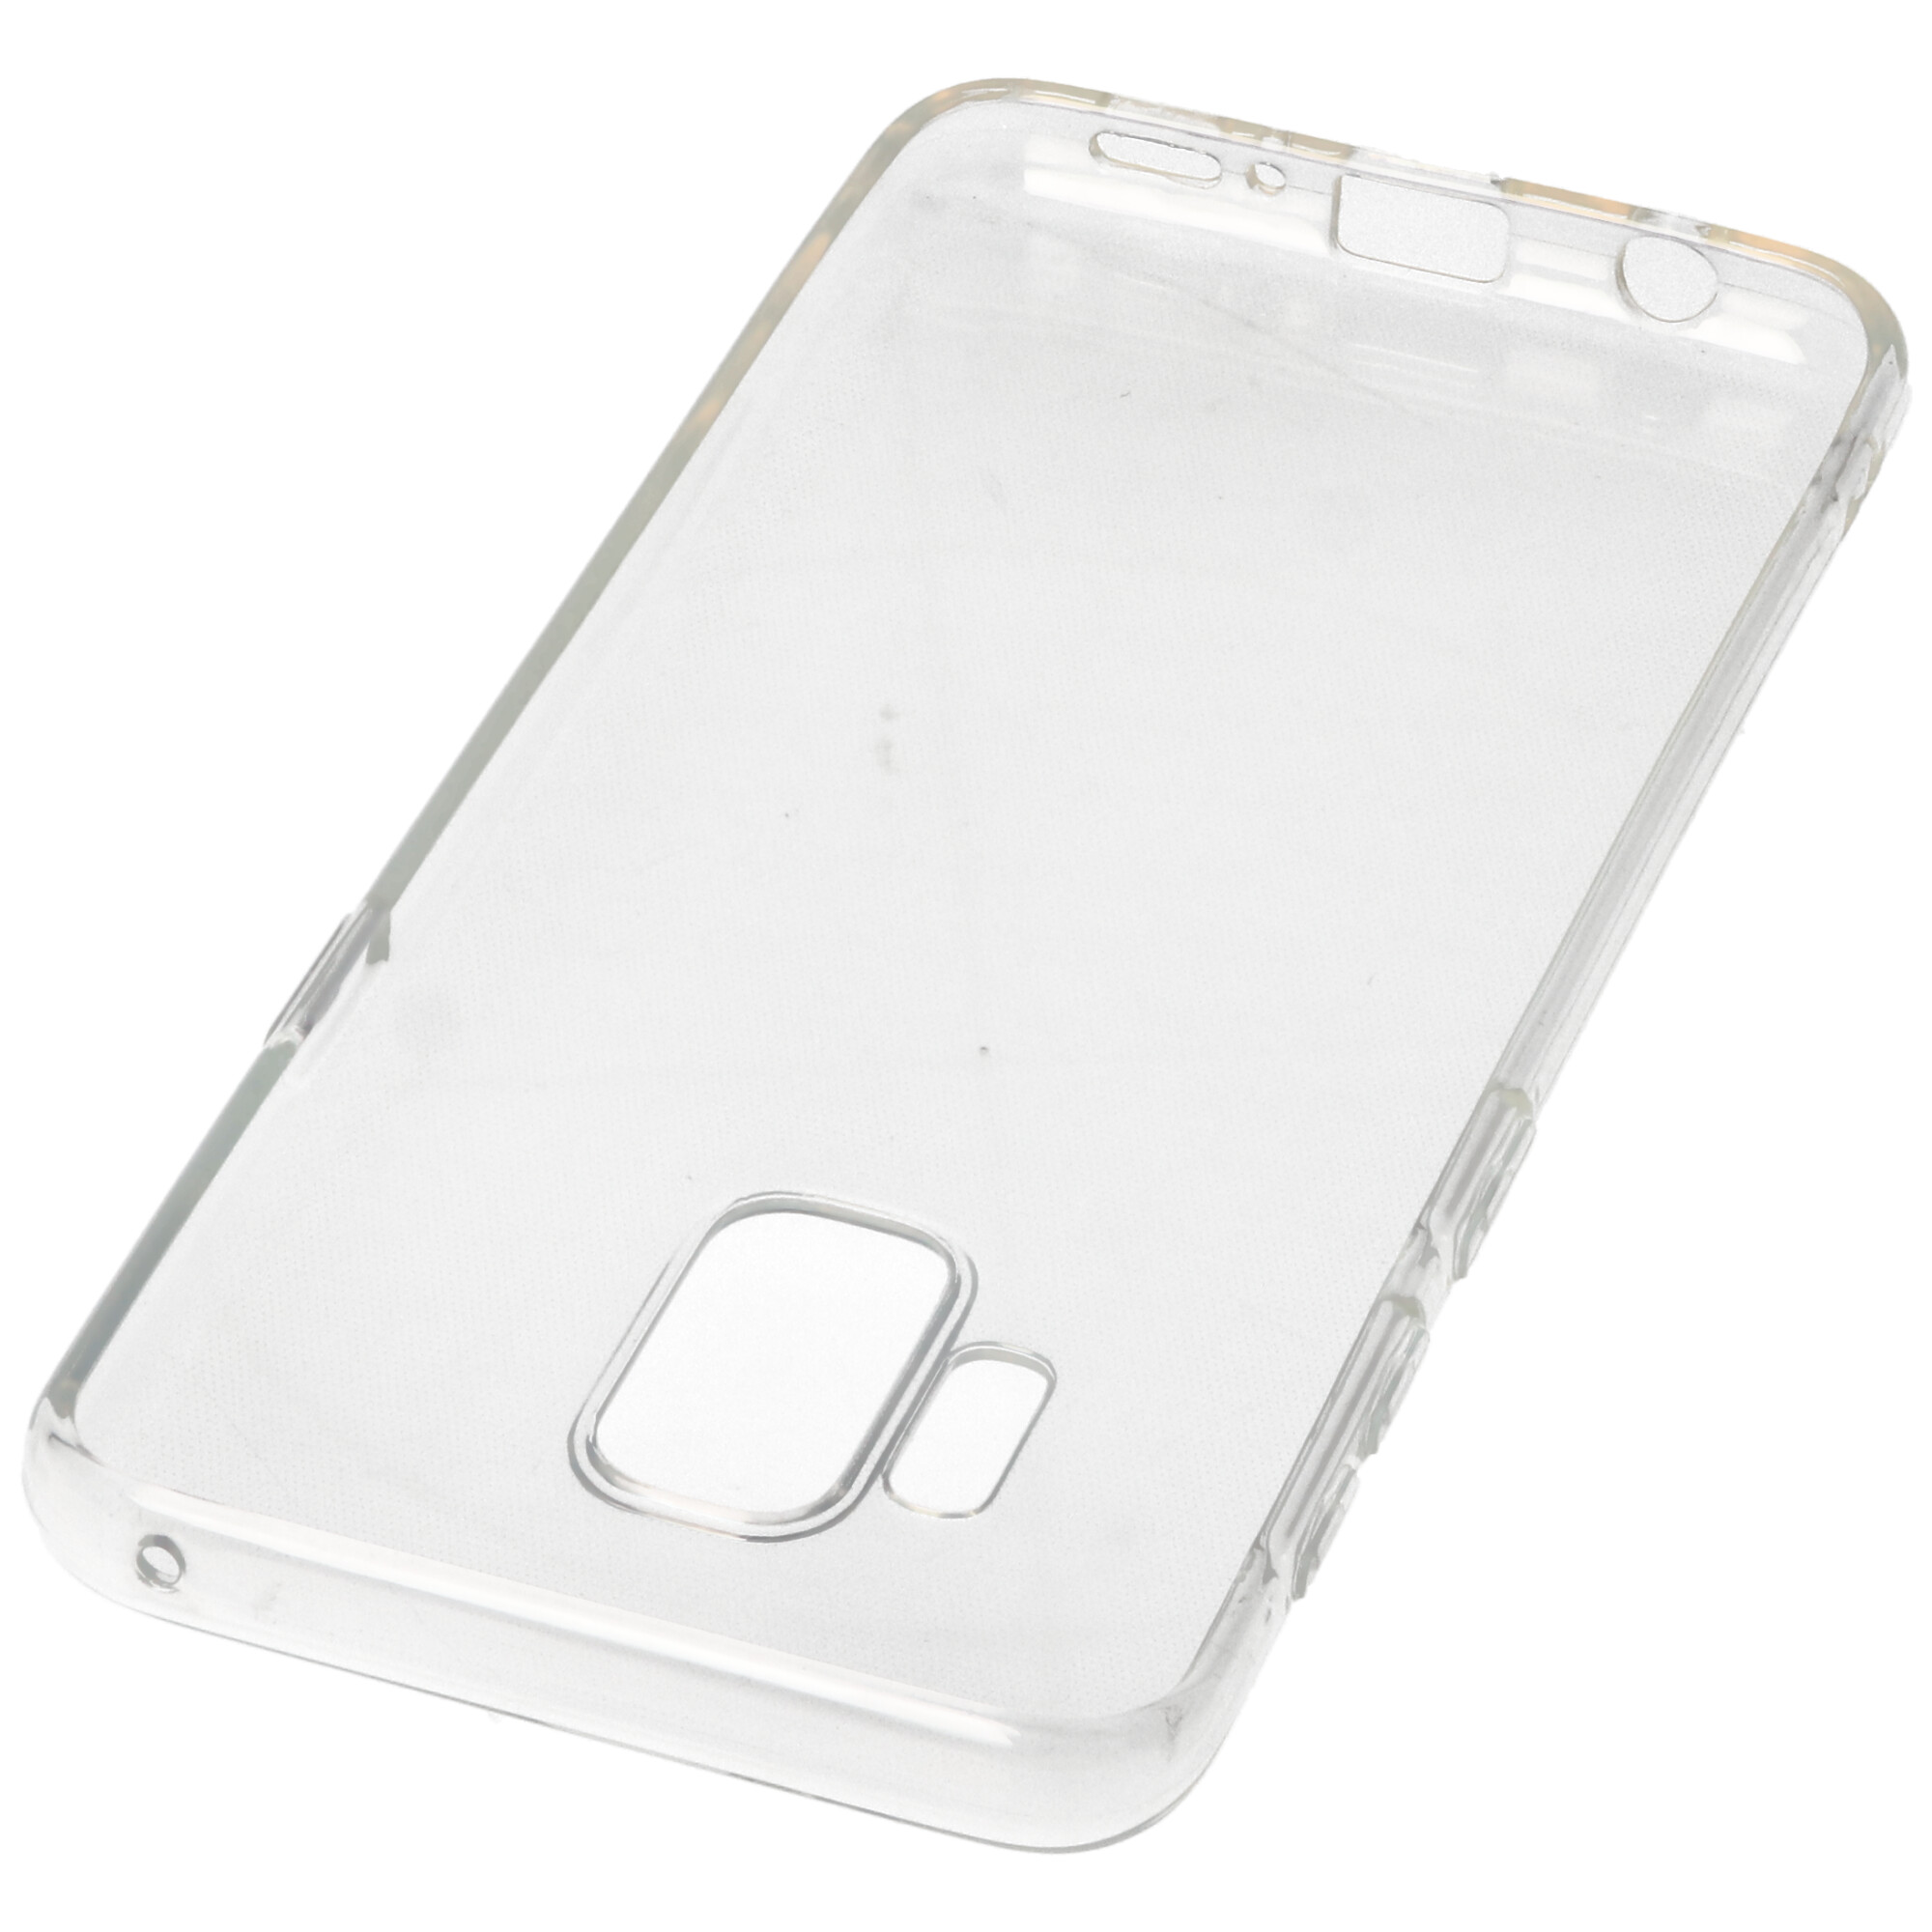 Hülle passend für Samsung Galaxy S9 - transparente Schutzhülle, Anti-Gelb Luftkissen Fallschutz Silikon Handyhülle robustes TPU Case